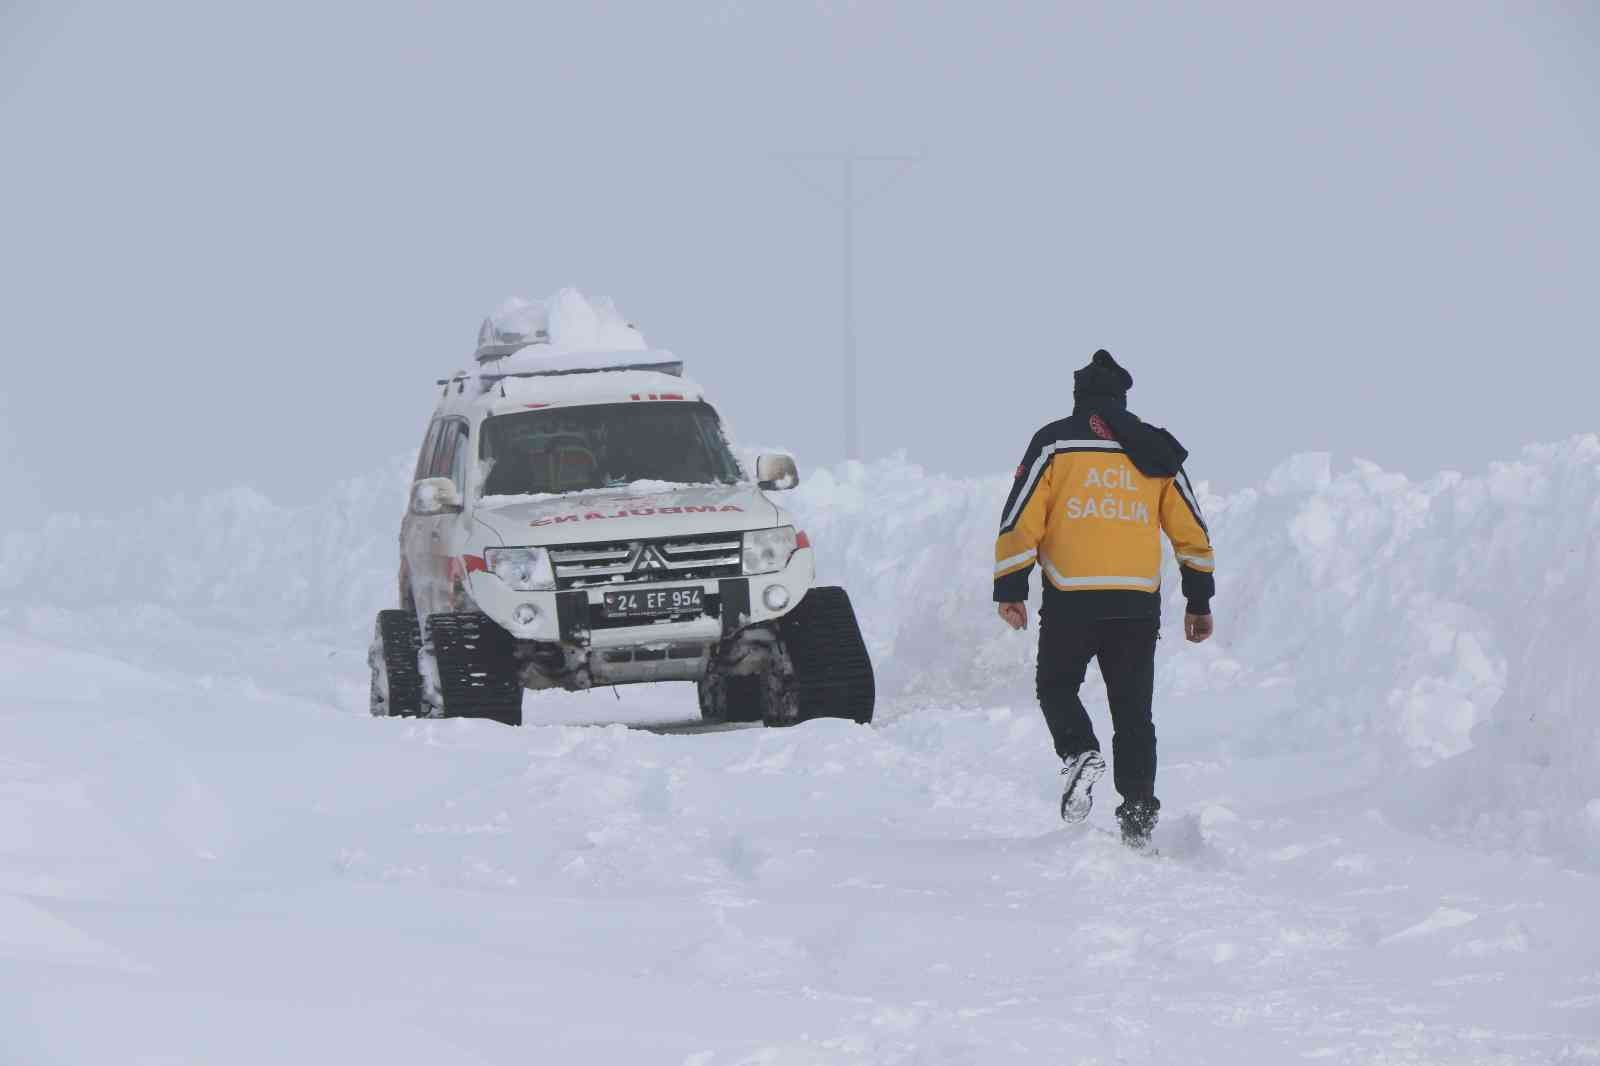 112 Acil Sağlık ekipleri karlı yolları aşıp hastalara ulaşıyor #erzincan